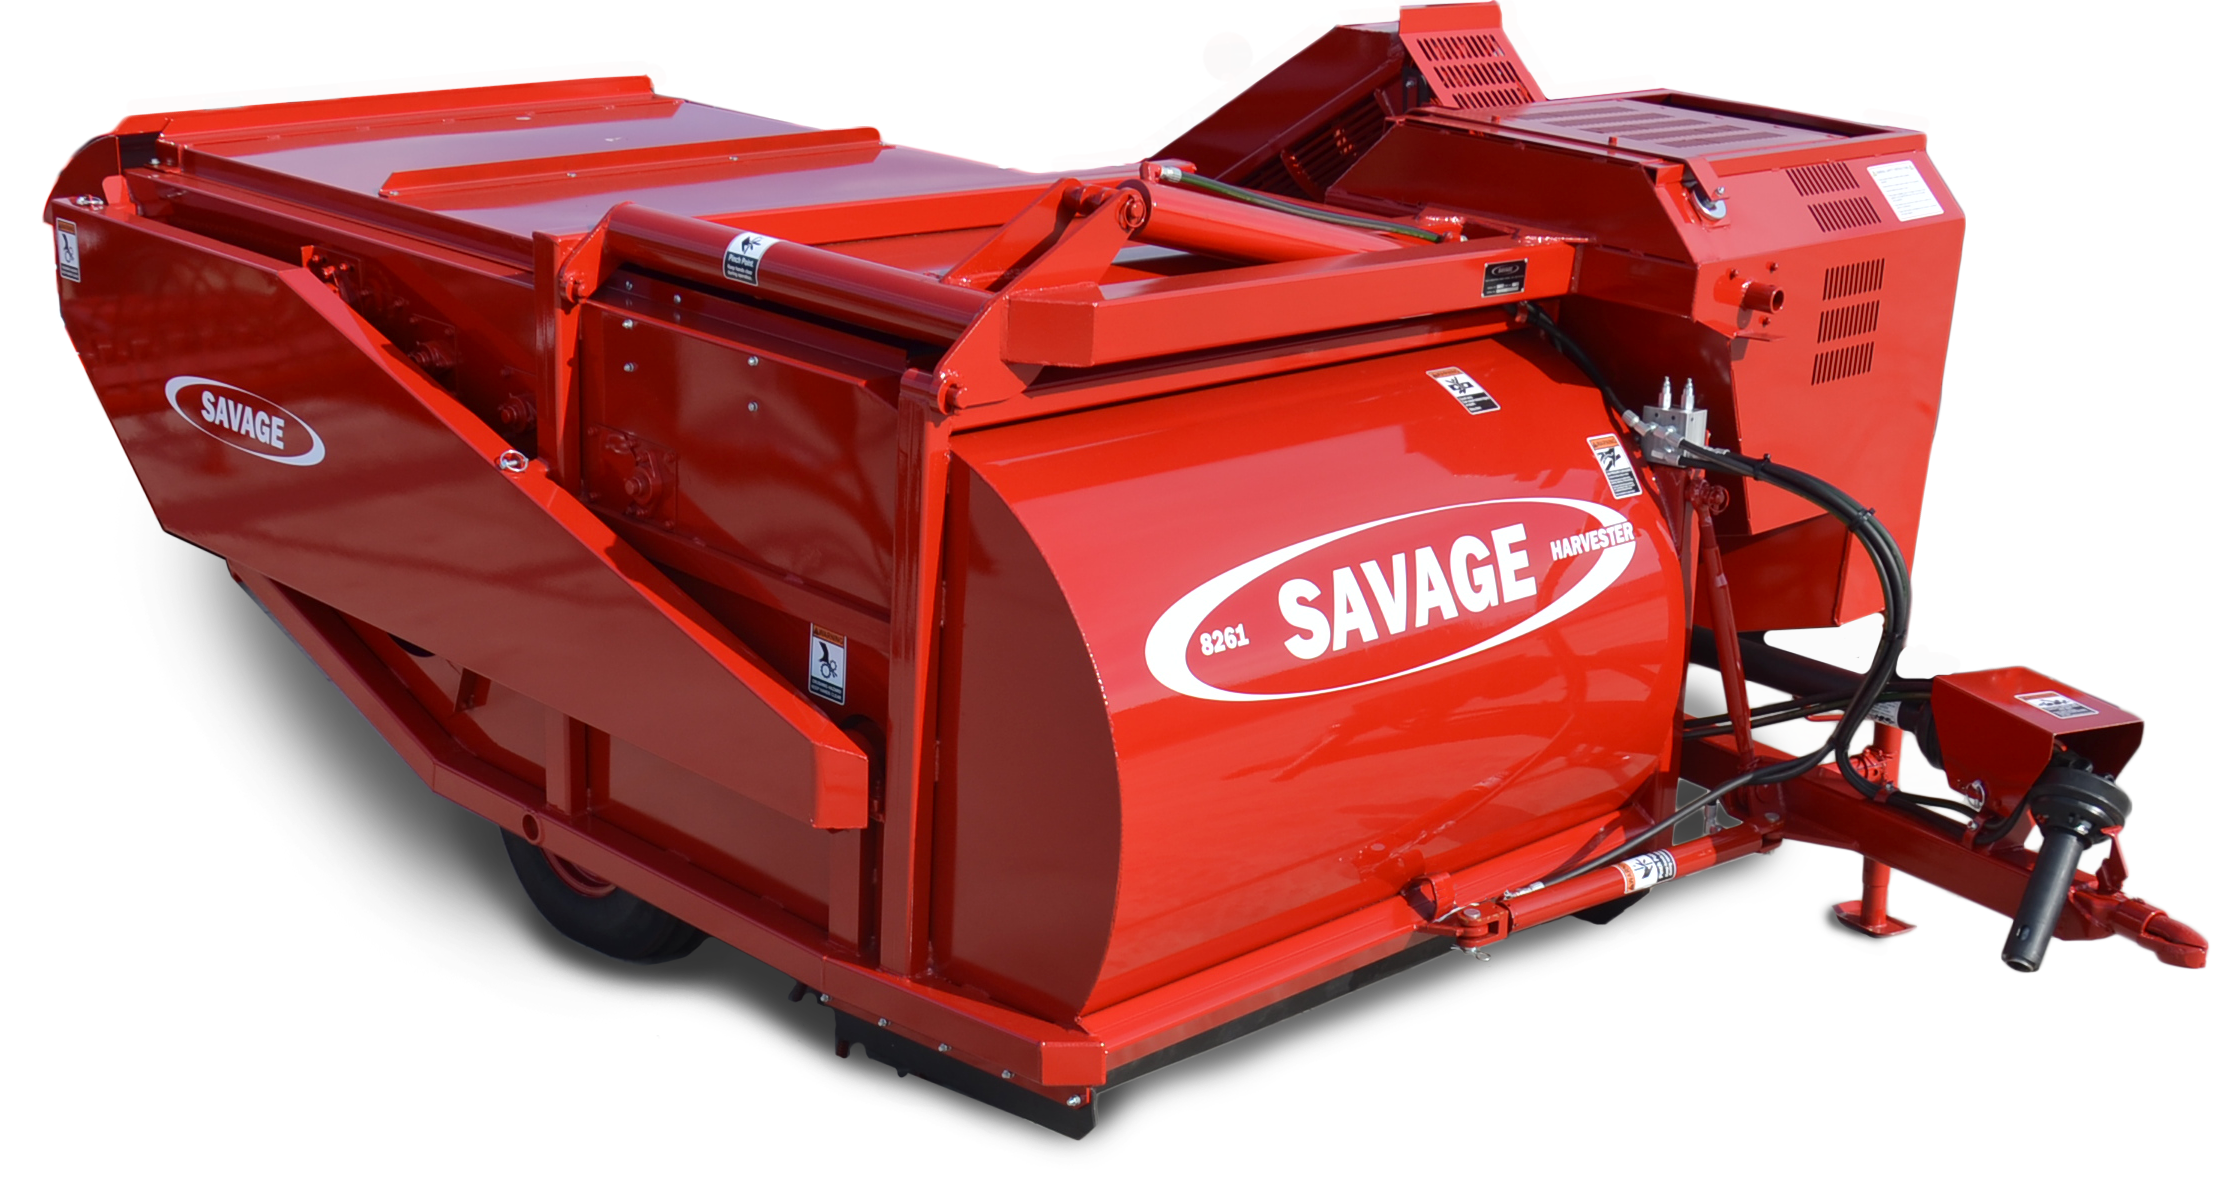 Savage 8261 Harvester